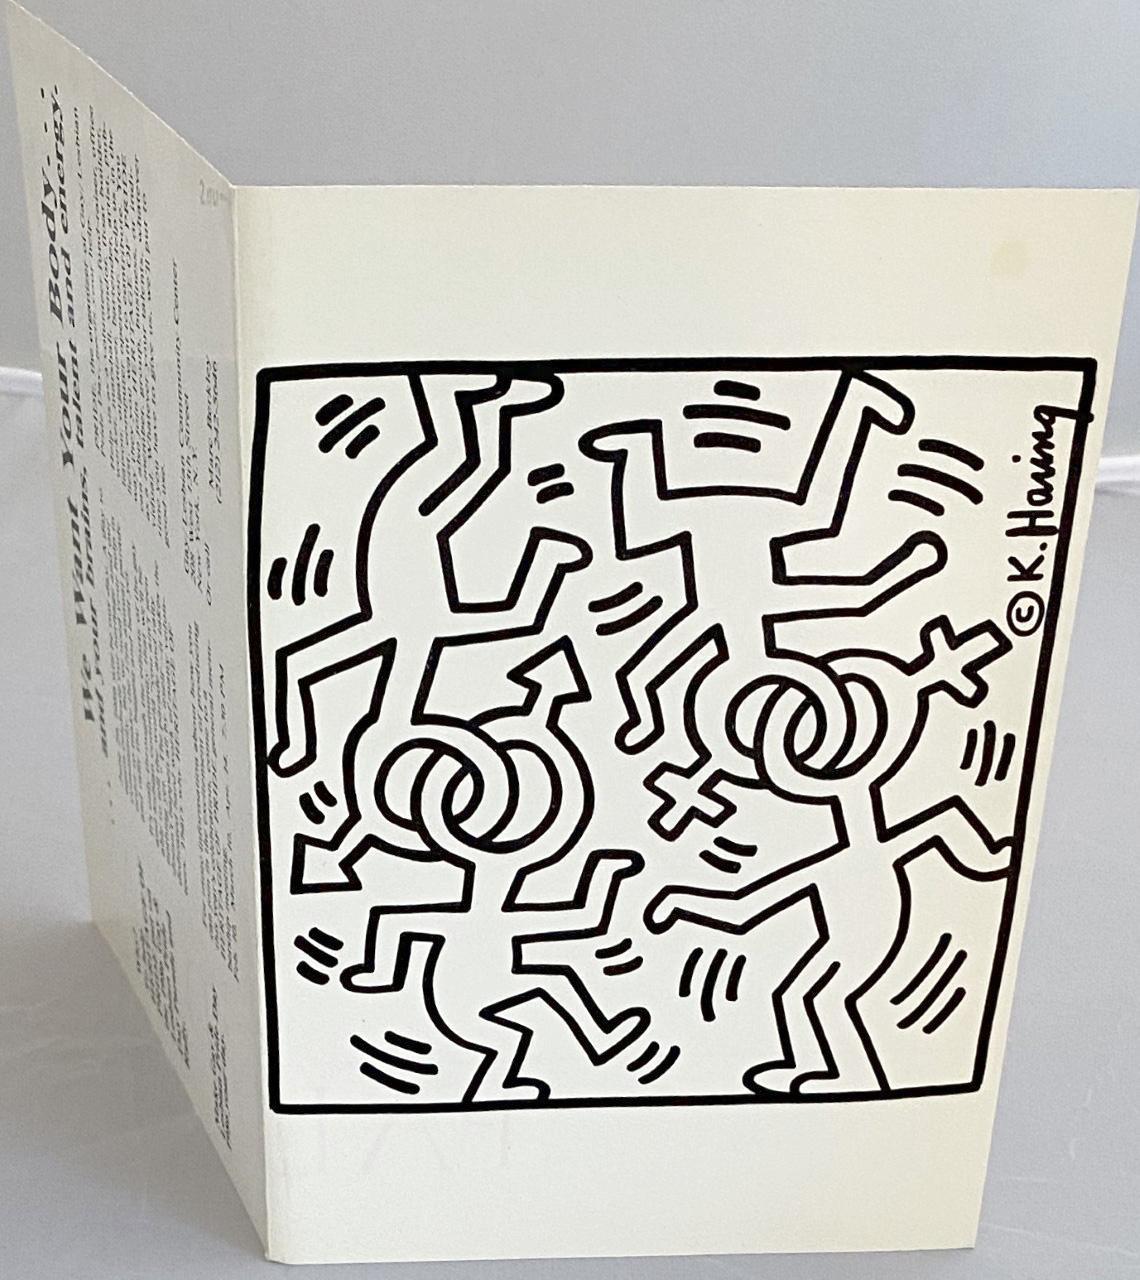 Keith Haring Gay Pride New York 1986: 
Von Keith Haring illustrierte Falt-Einladung für den Gay/Lesbian Pride Day im New Yorker Nachtclub Palladium, 1986. Ausgeführt zu Lebzeiten von Haring. Selten und sehr sammelwürdig.

Offsetgedruckte